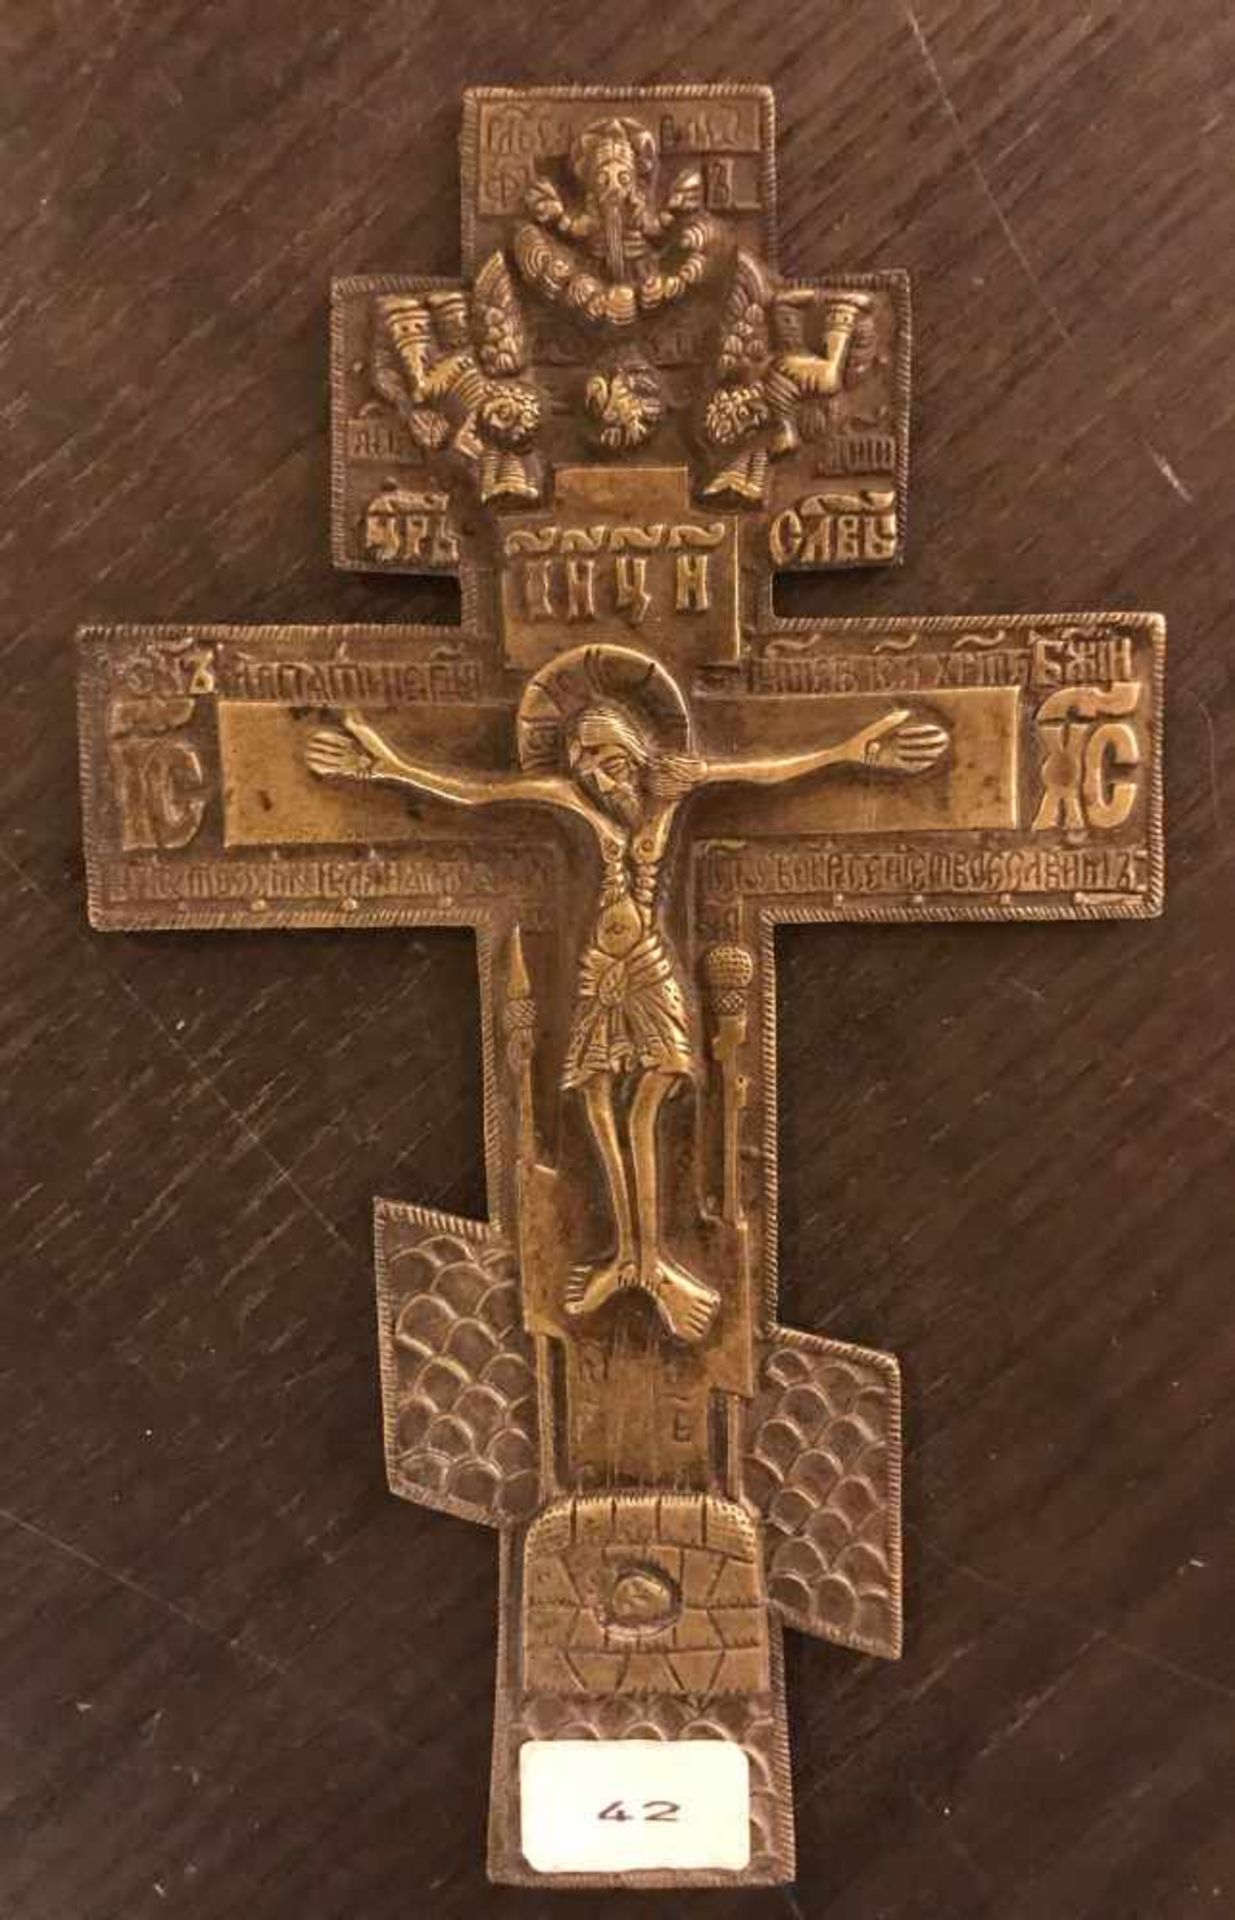 Orthodoxes Kreuz, Messingbronze, L. ca. 20 cm